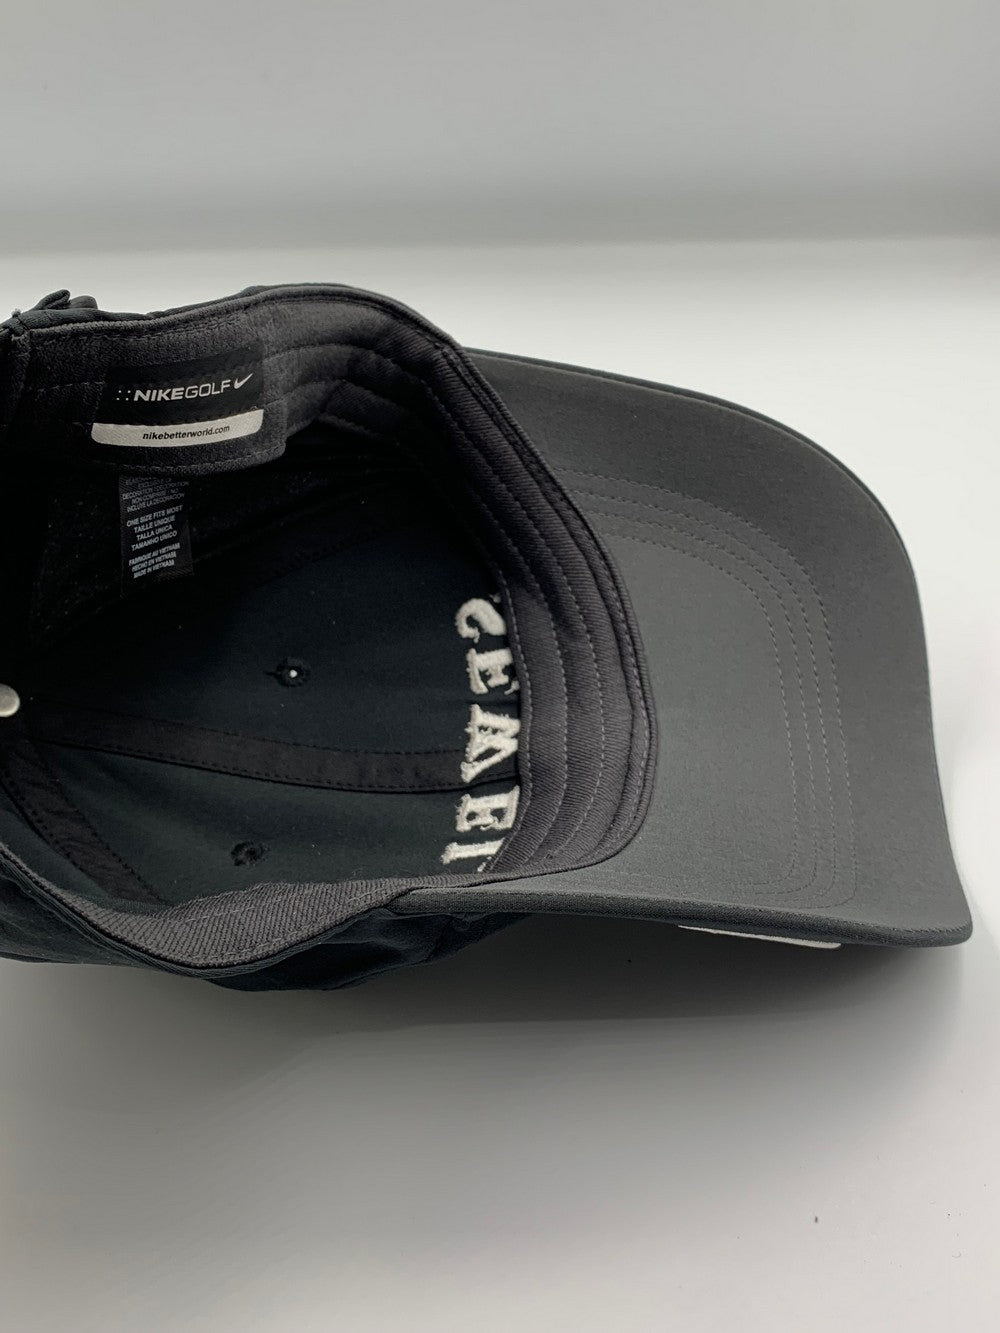 Nike Golf Branded Original Branded Caps For Men